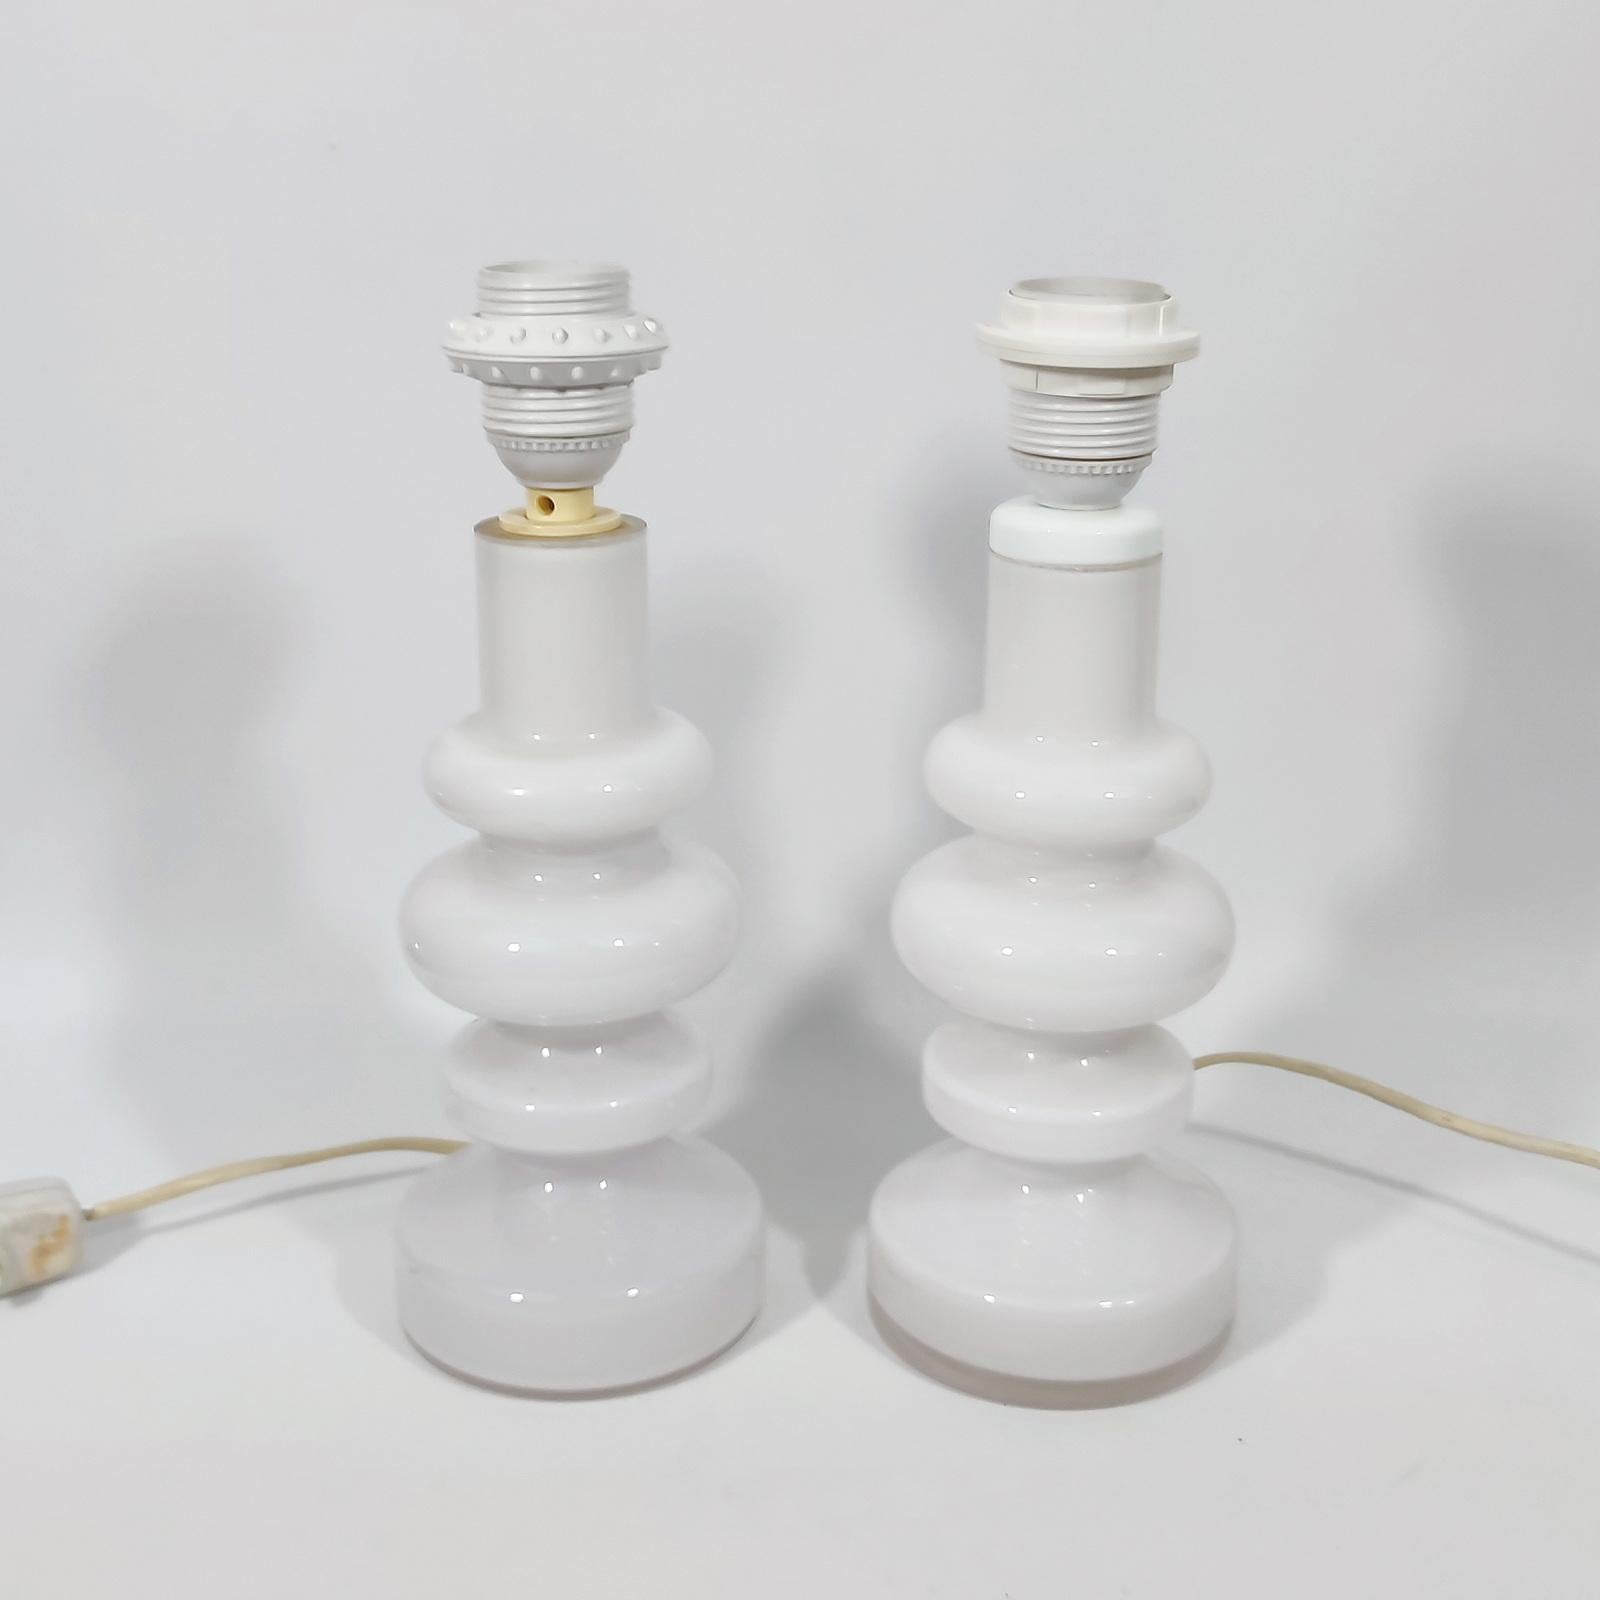 Seltener Fund! Zwei Tischlampen aus milchig weißem Glas, entworfen von Gunnar Ander für Lindshammar, Schweden, Ende der 1960er Jahre.
Im Originalzustand. Keine Chips oder andere Schäden.
Die Lampenschirme sind nicht enthalten.
Ausgestattet mit 2